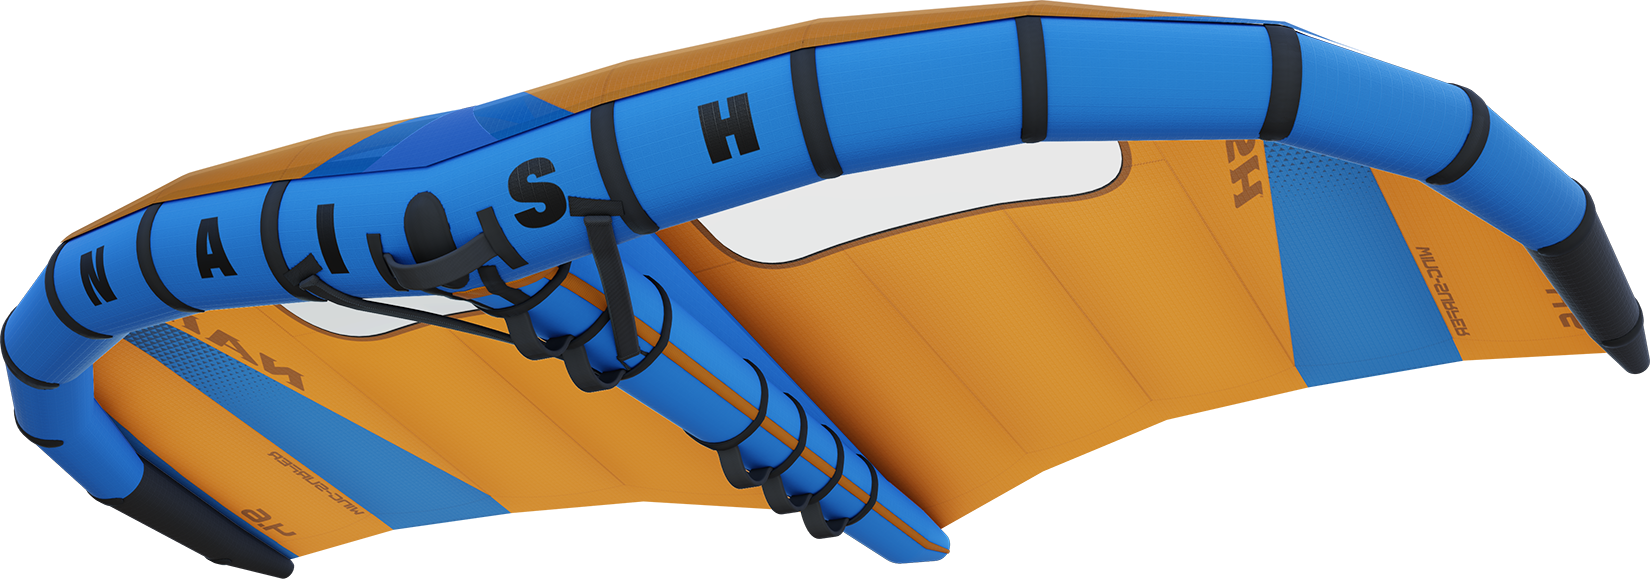 Naish S26 Wing-Surfer Wing